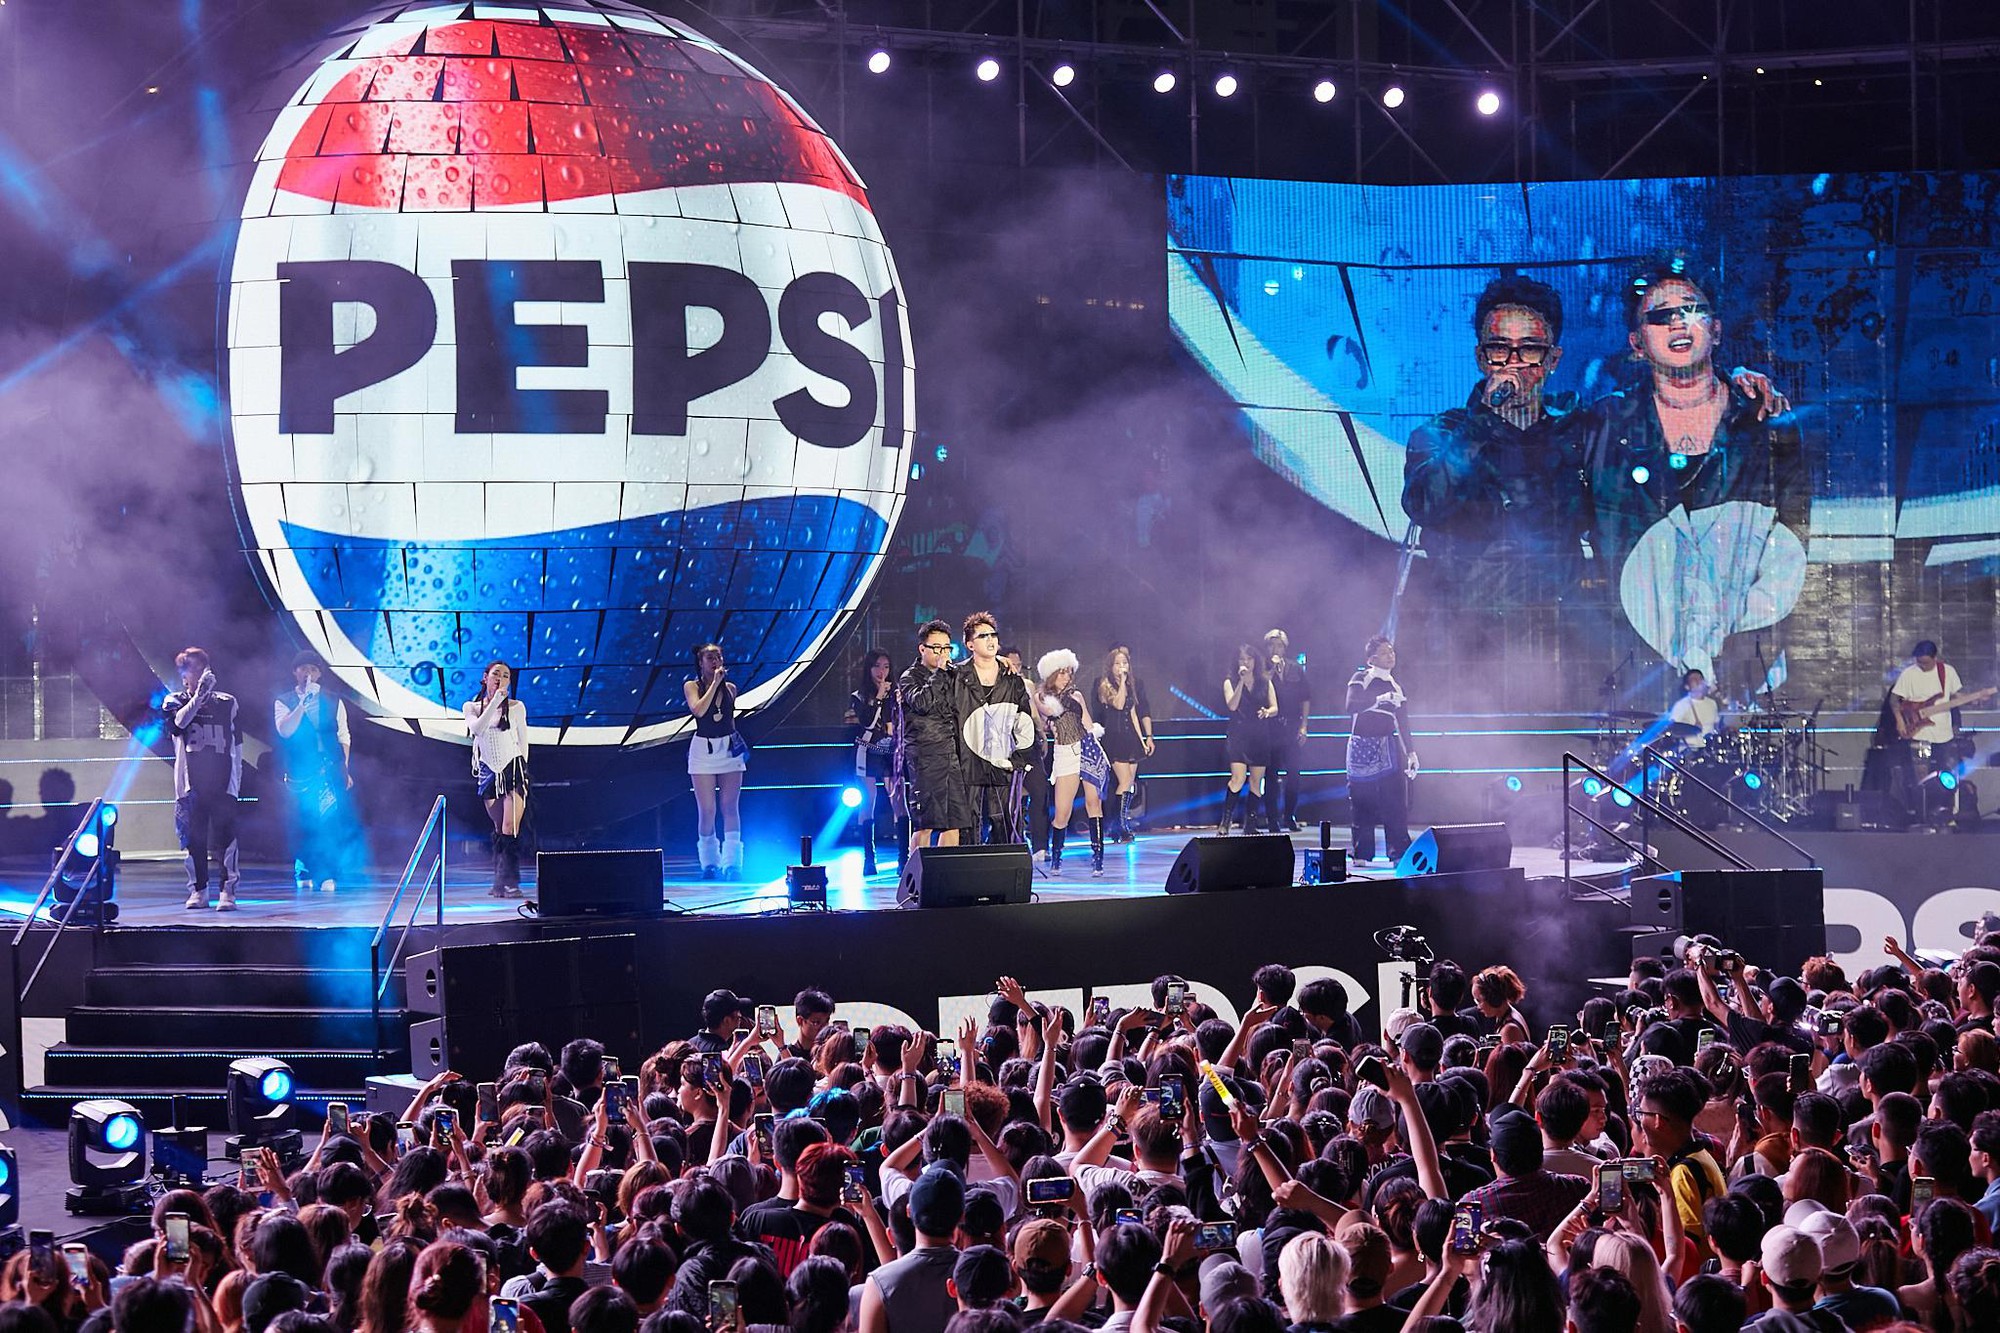 Pepsi đánh dấu kỷ nguyên mới với chuỗi sự kiện bùng nổ đúng chất “Đã cơn khát, thỏa đam mê” - Ảnh 7.